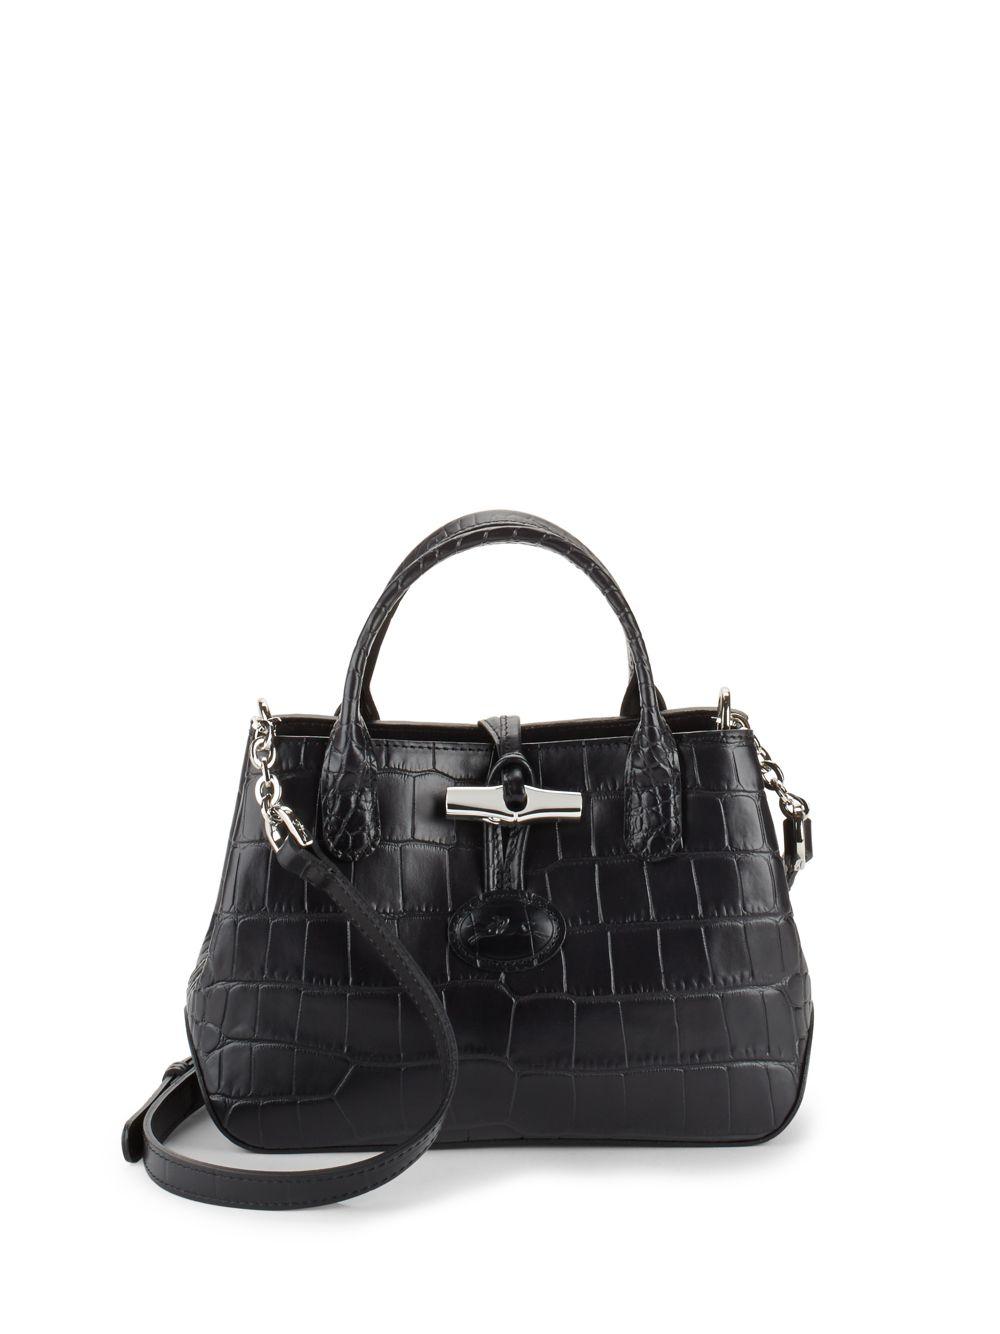 Longchamp Roseau Crossbody Bag - Neutrals Crossbody Bags, Handbags